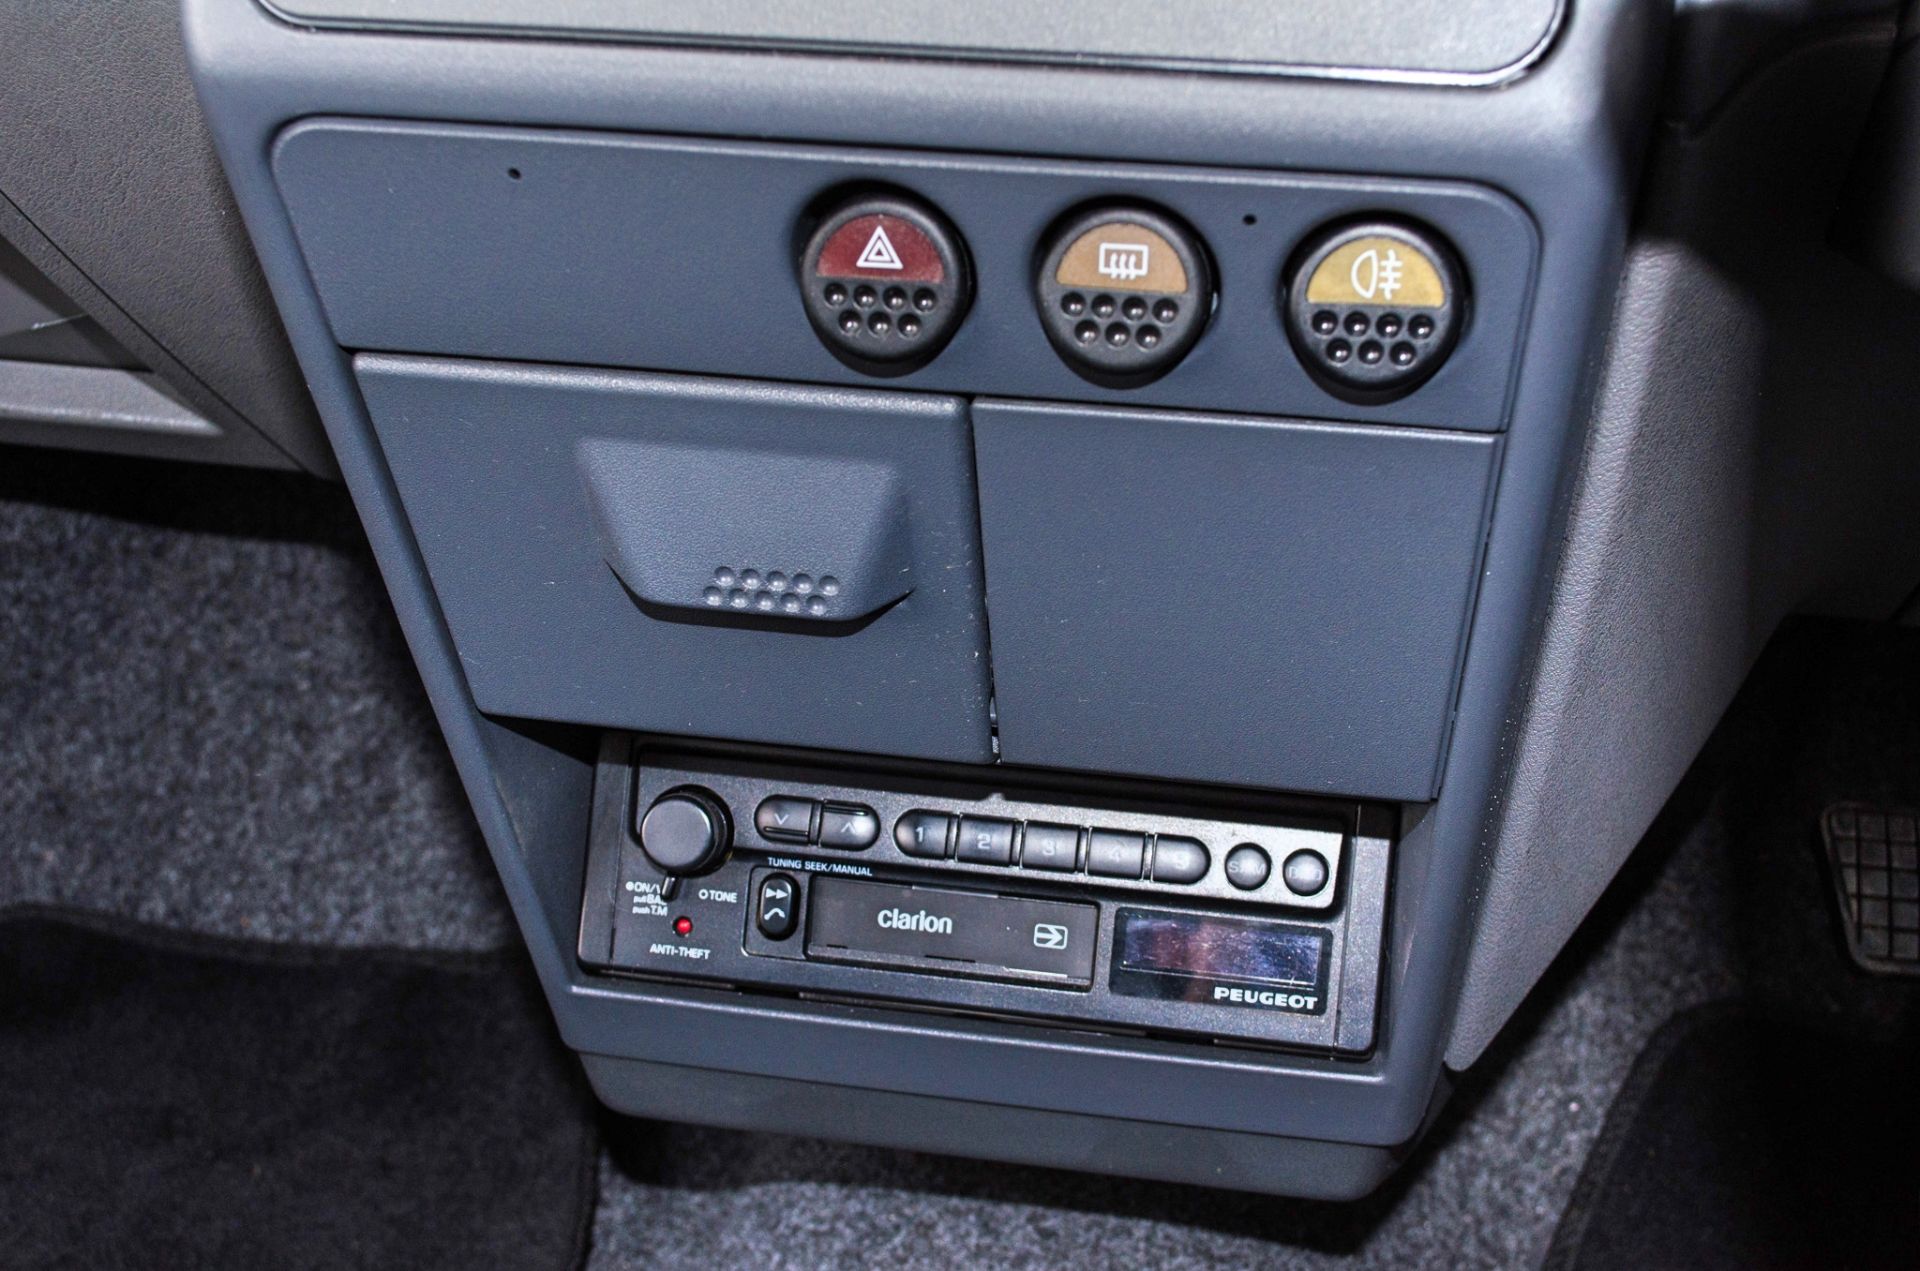 1991 Peugeot 205 954cc Trio 3 door hatchback - Image 44 of 55